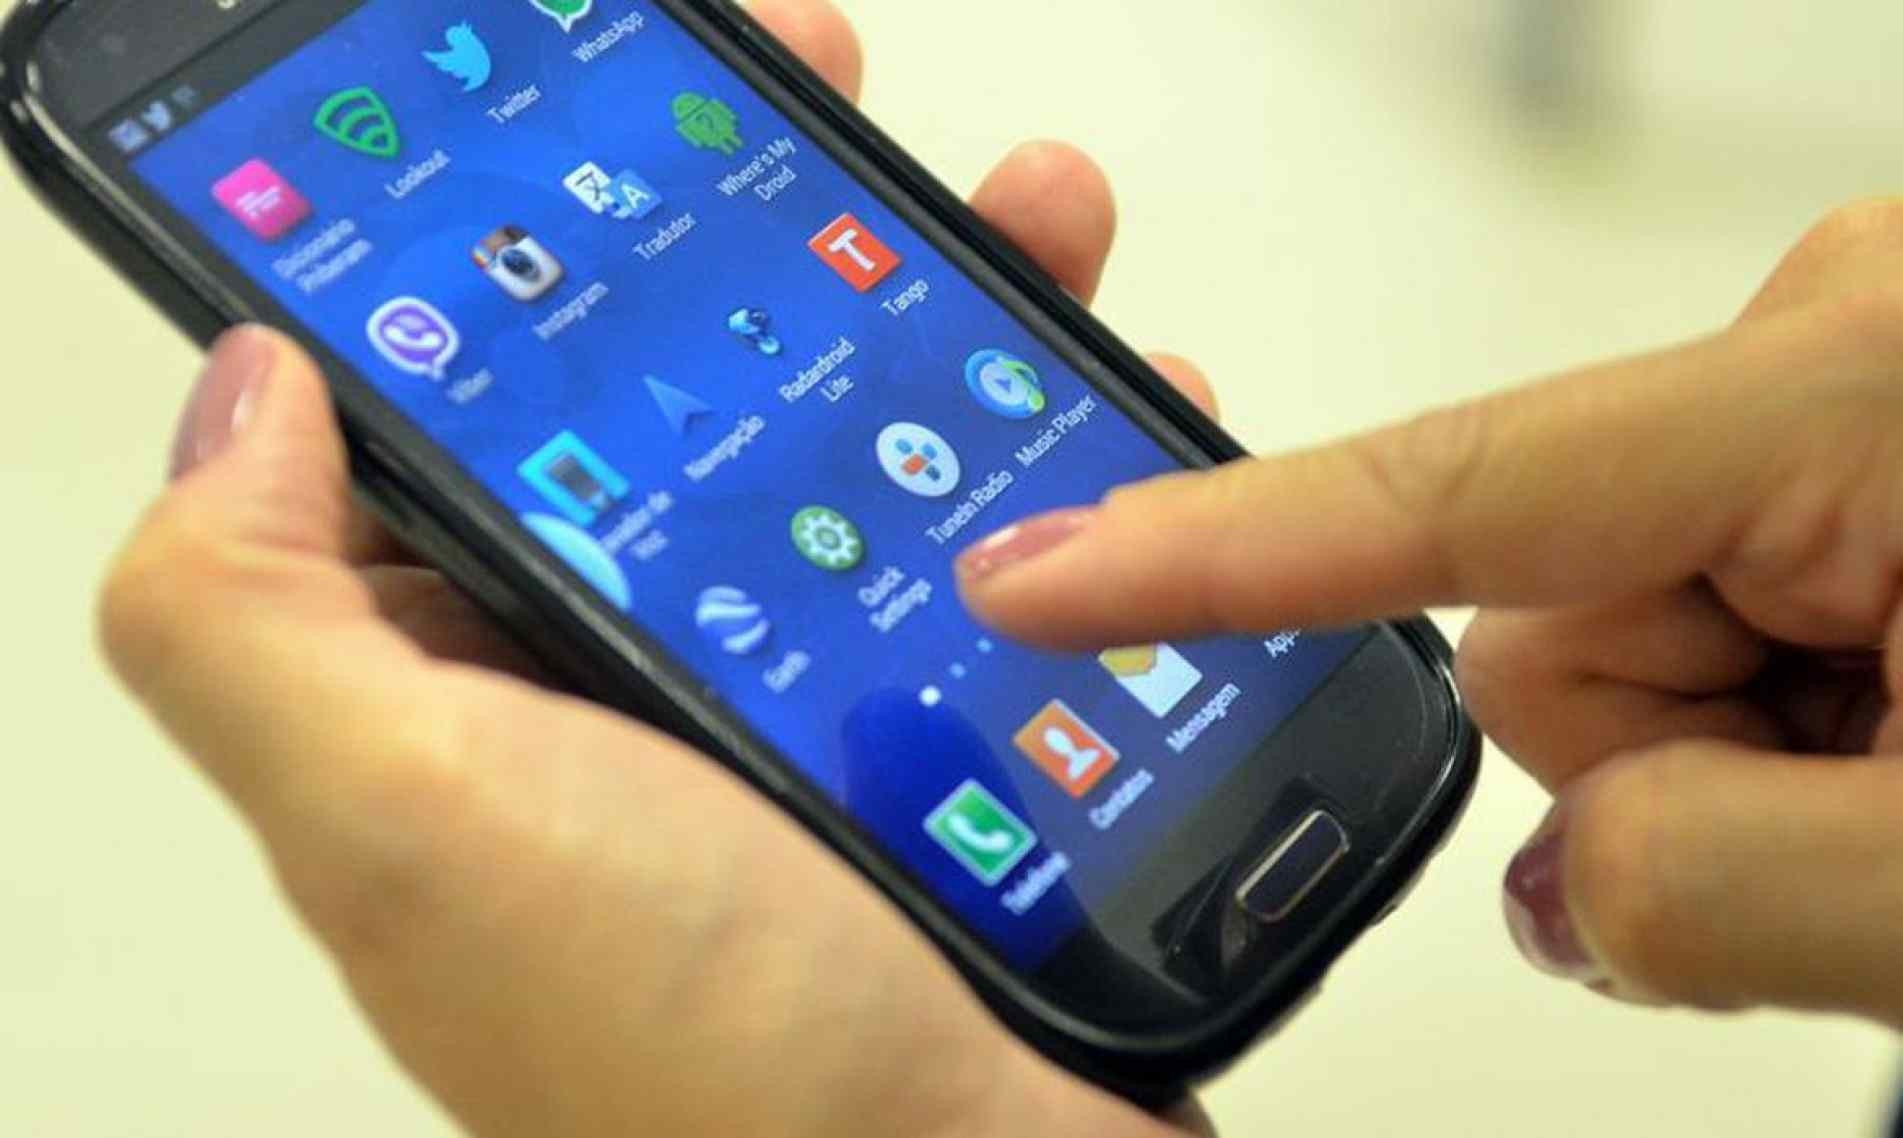 Participantes relataram maior tempo de exposição a celulares e computadores.